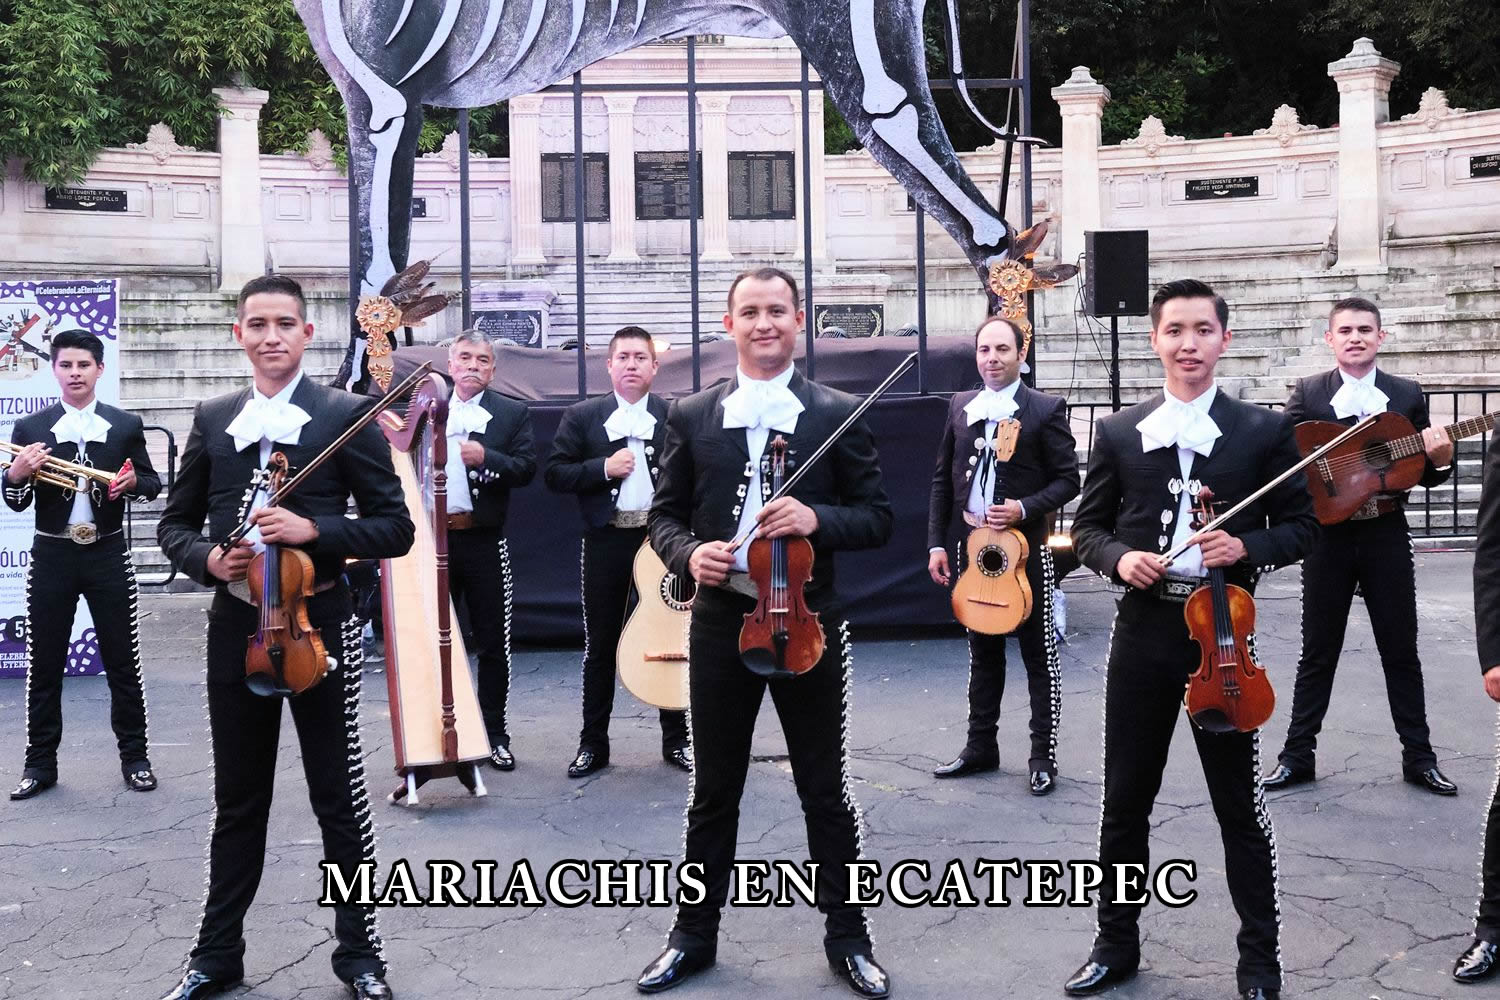 Mariachis en ecatepec